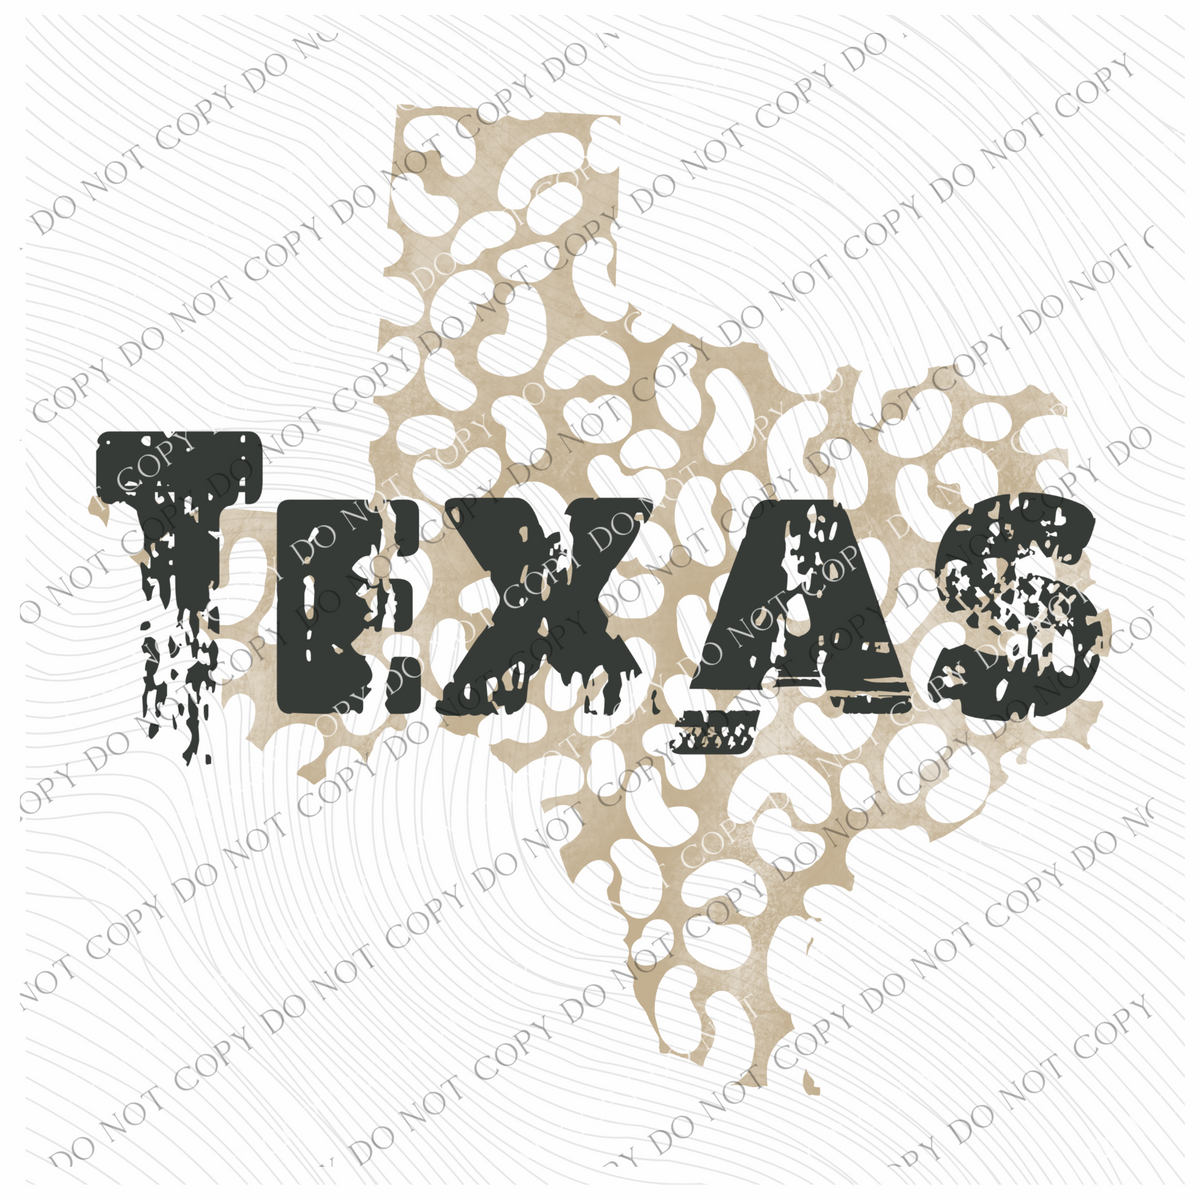 TX Texas Khaki/Faded Black Leopard Stitch State Distressed Digital Design, PNG